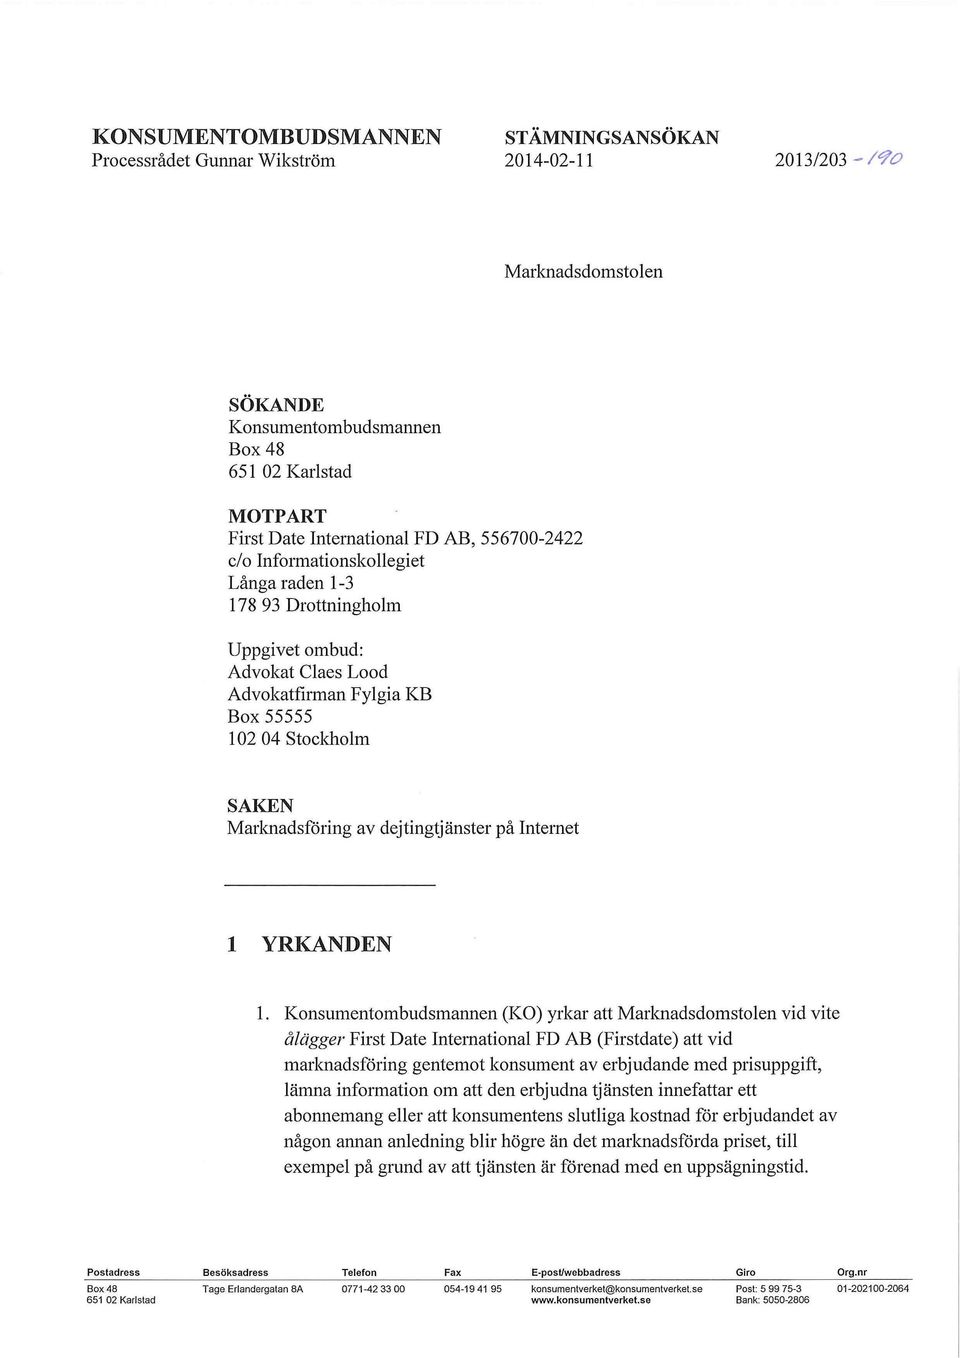 ombud: Advokat Claes Lood Advokatfirman Fylgia KB Box 55555 102 04 Stockholm SAKEN Marknadsföring av dejtingtjänster på Internet 1 YRKANDEN Konsumentombudsmannen (KO) yrkar att Marknadsdomstolen vid